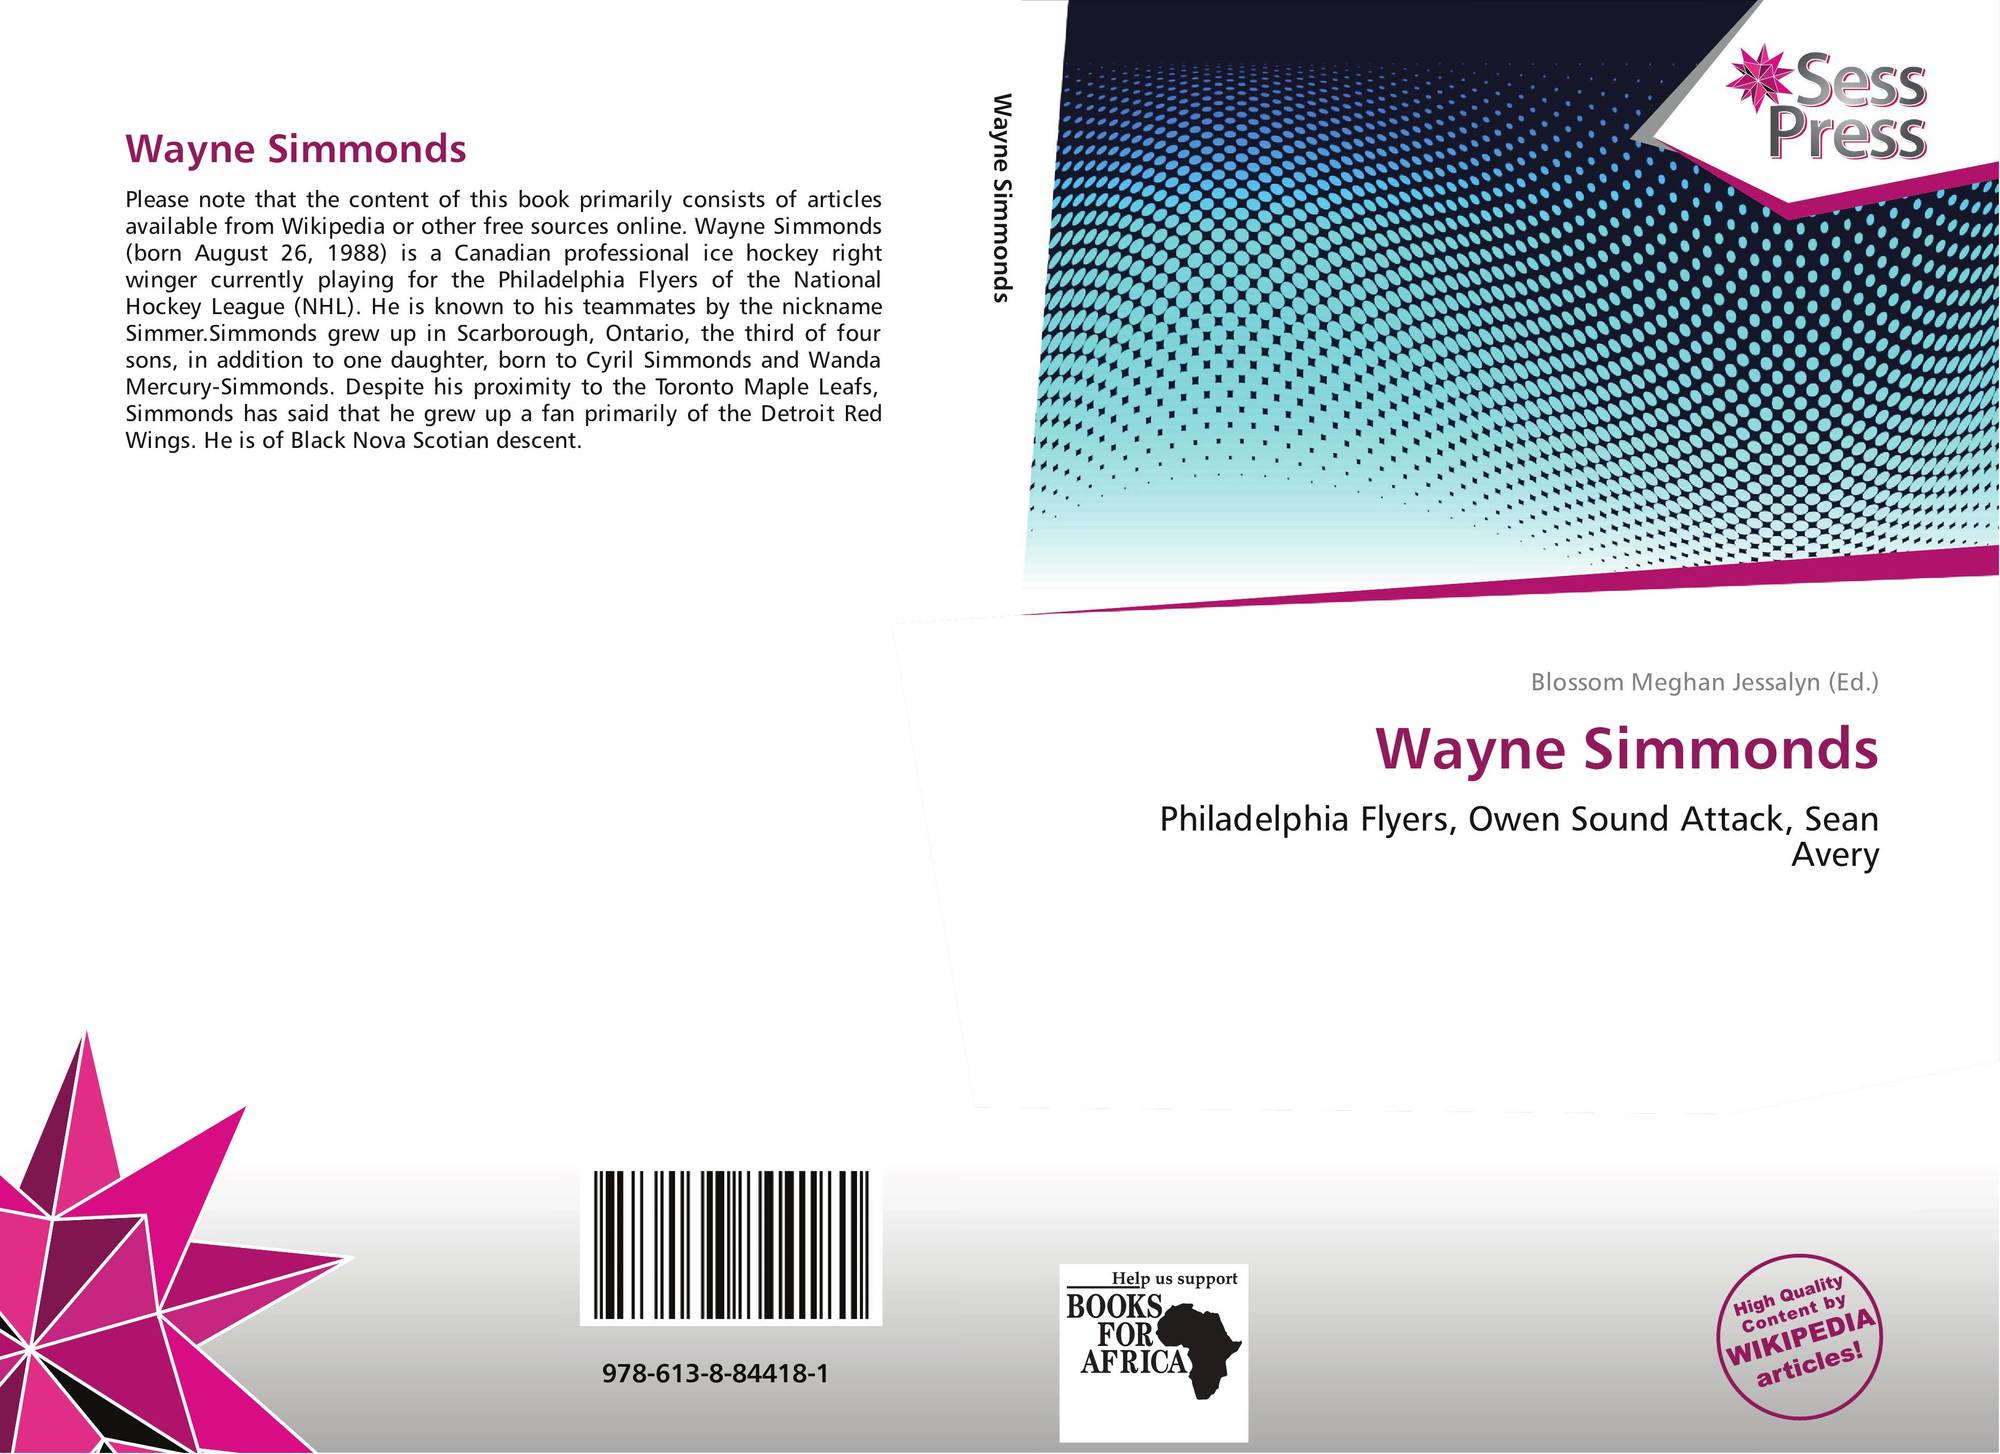 Wayne Simmonds - Wikipedia